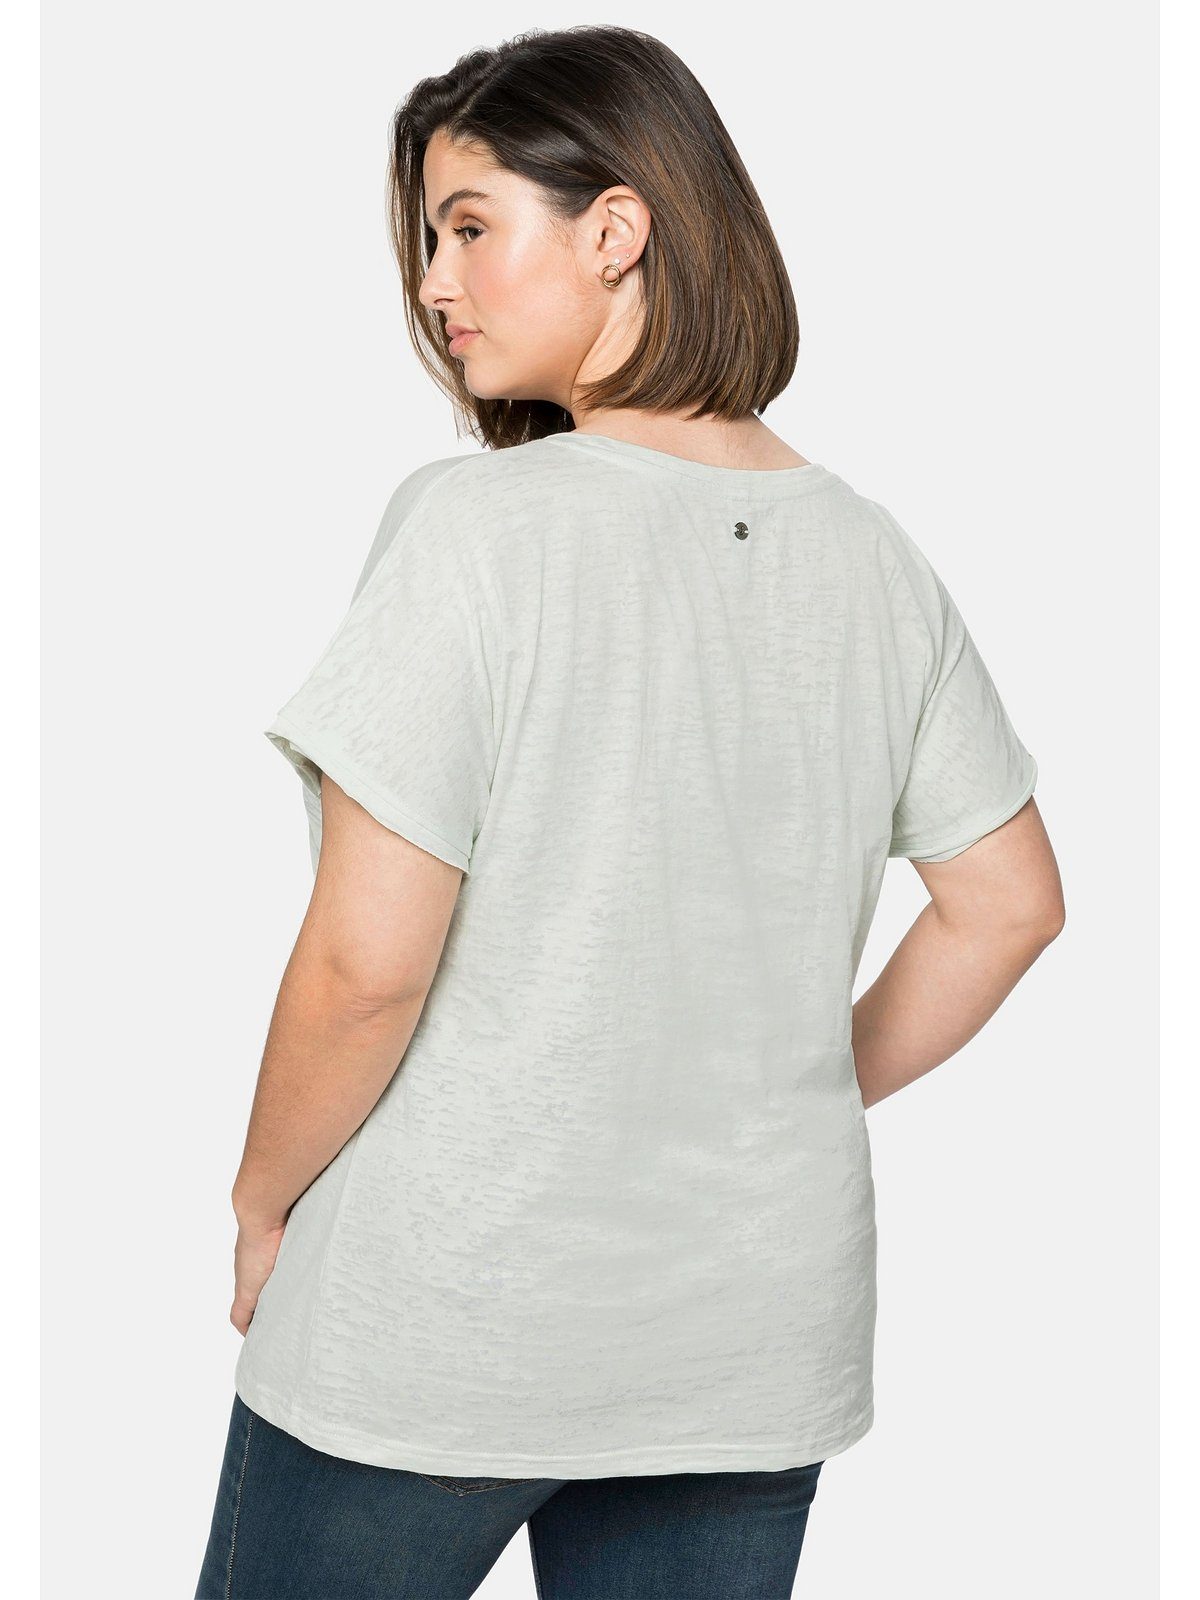 Sheego T-Shirt Große transparent mit Ausbrennermuster, leicht blassaqua Größen